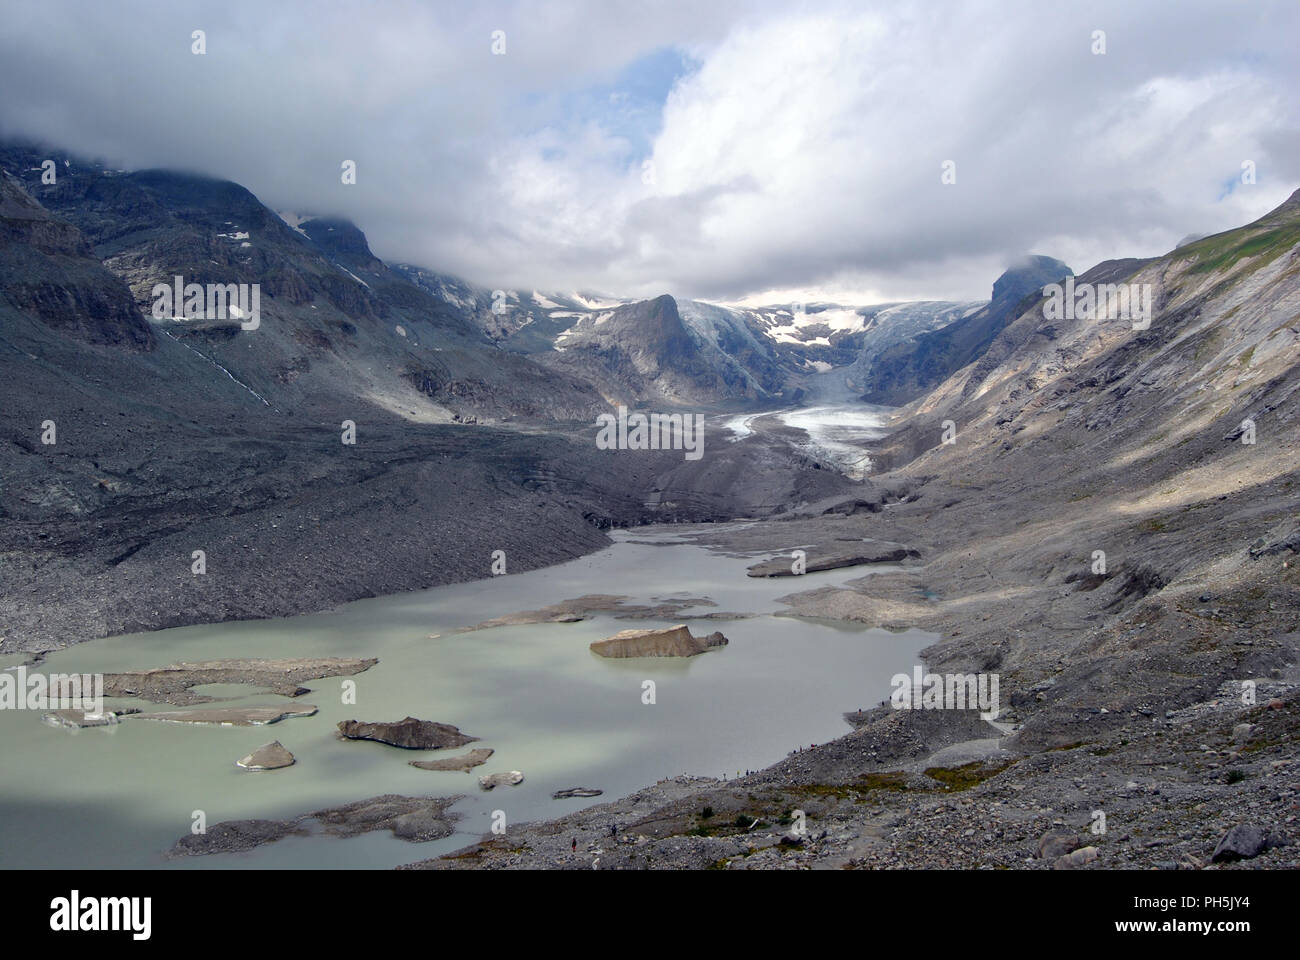 Austria, Pasterze glacier in the Gross Glockner range Stock Photo